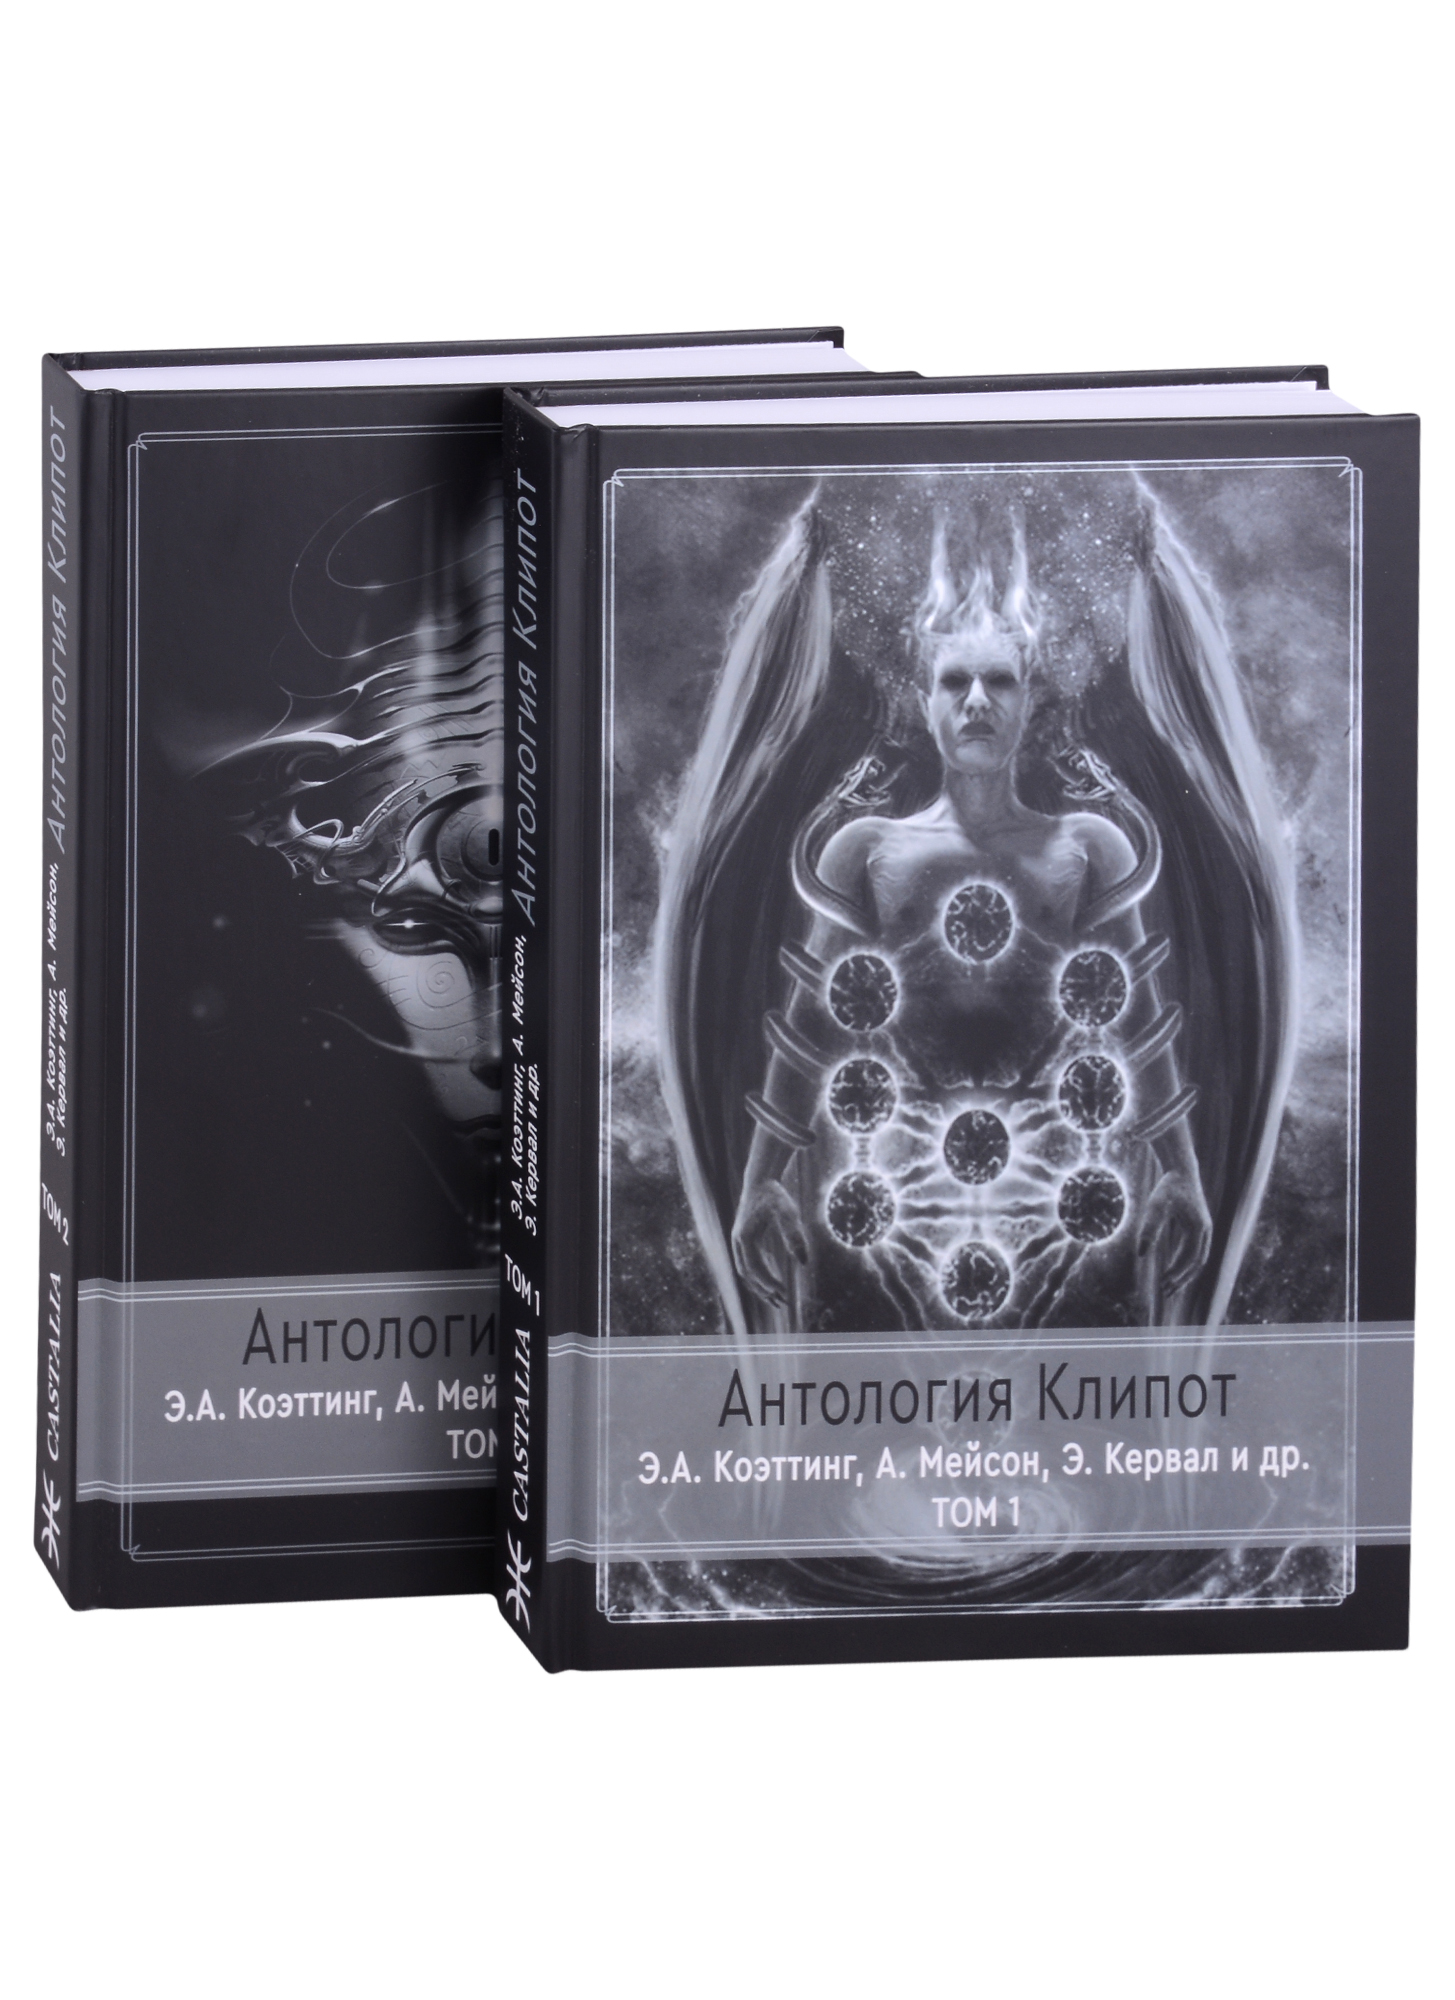 Коэттинг Э.А. Антология клипот. В 2 томах (комплект из 2 книг)